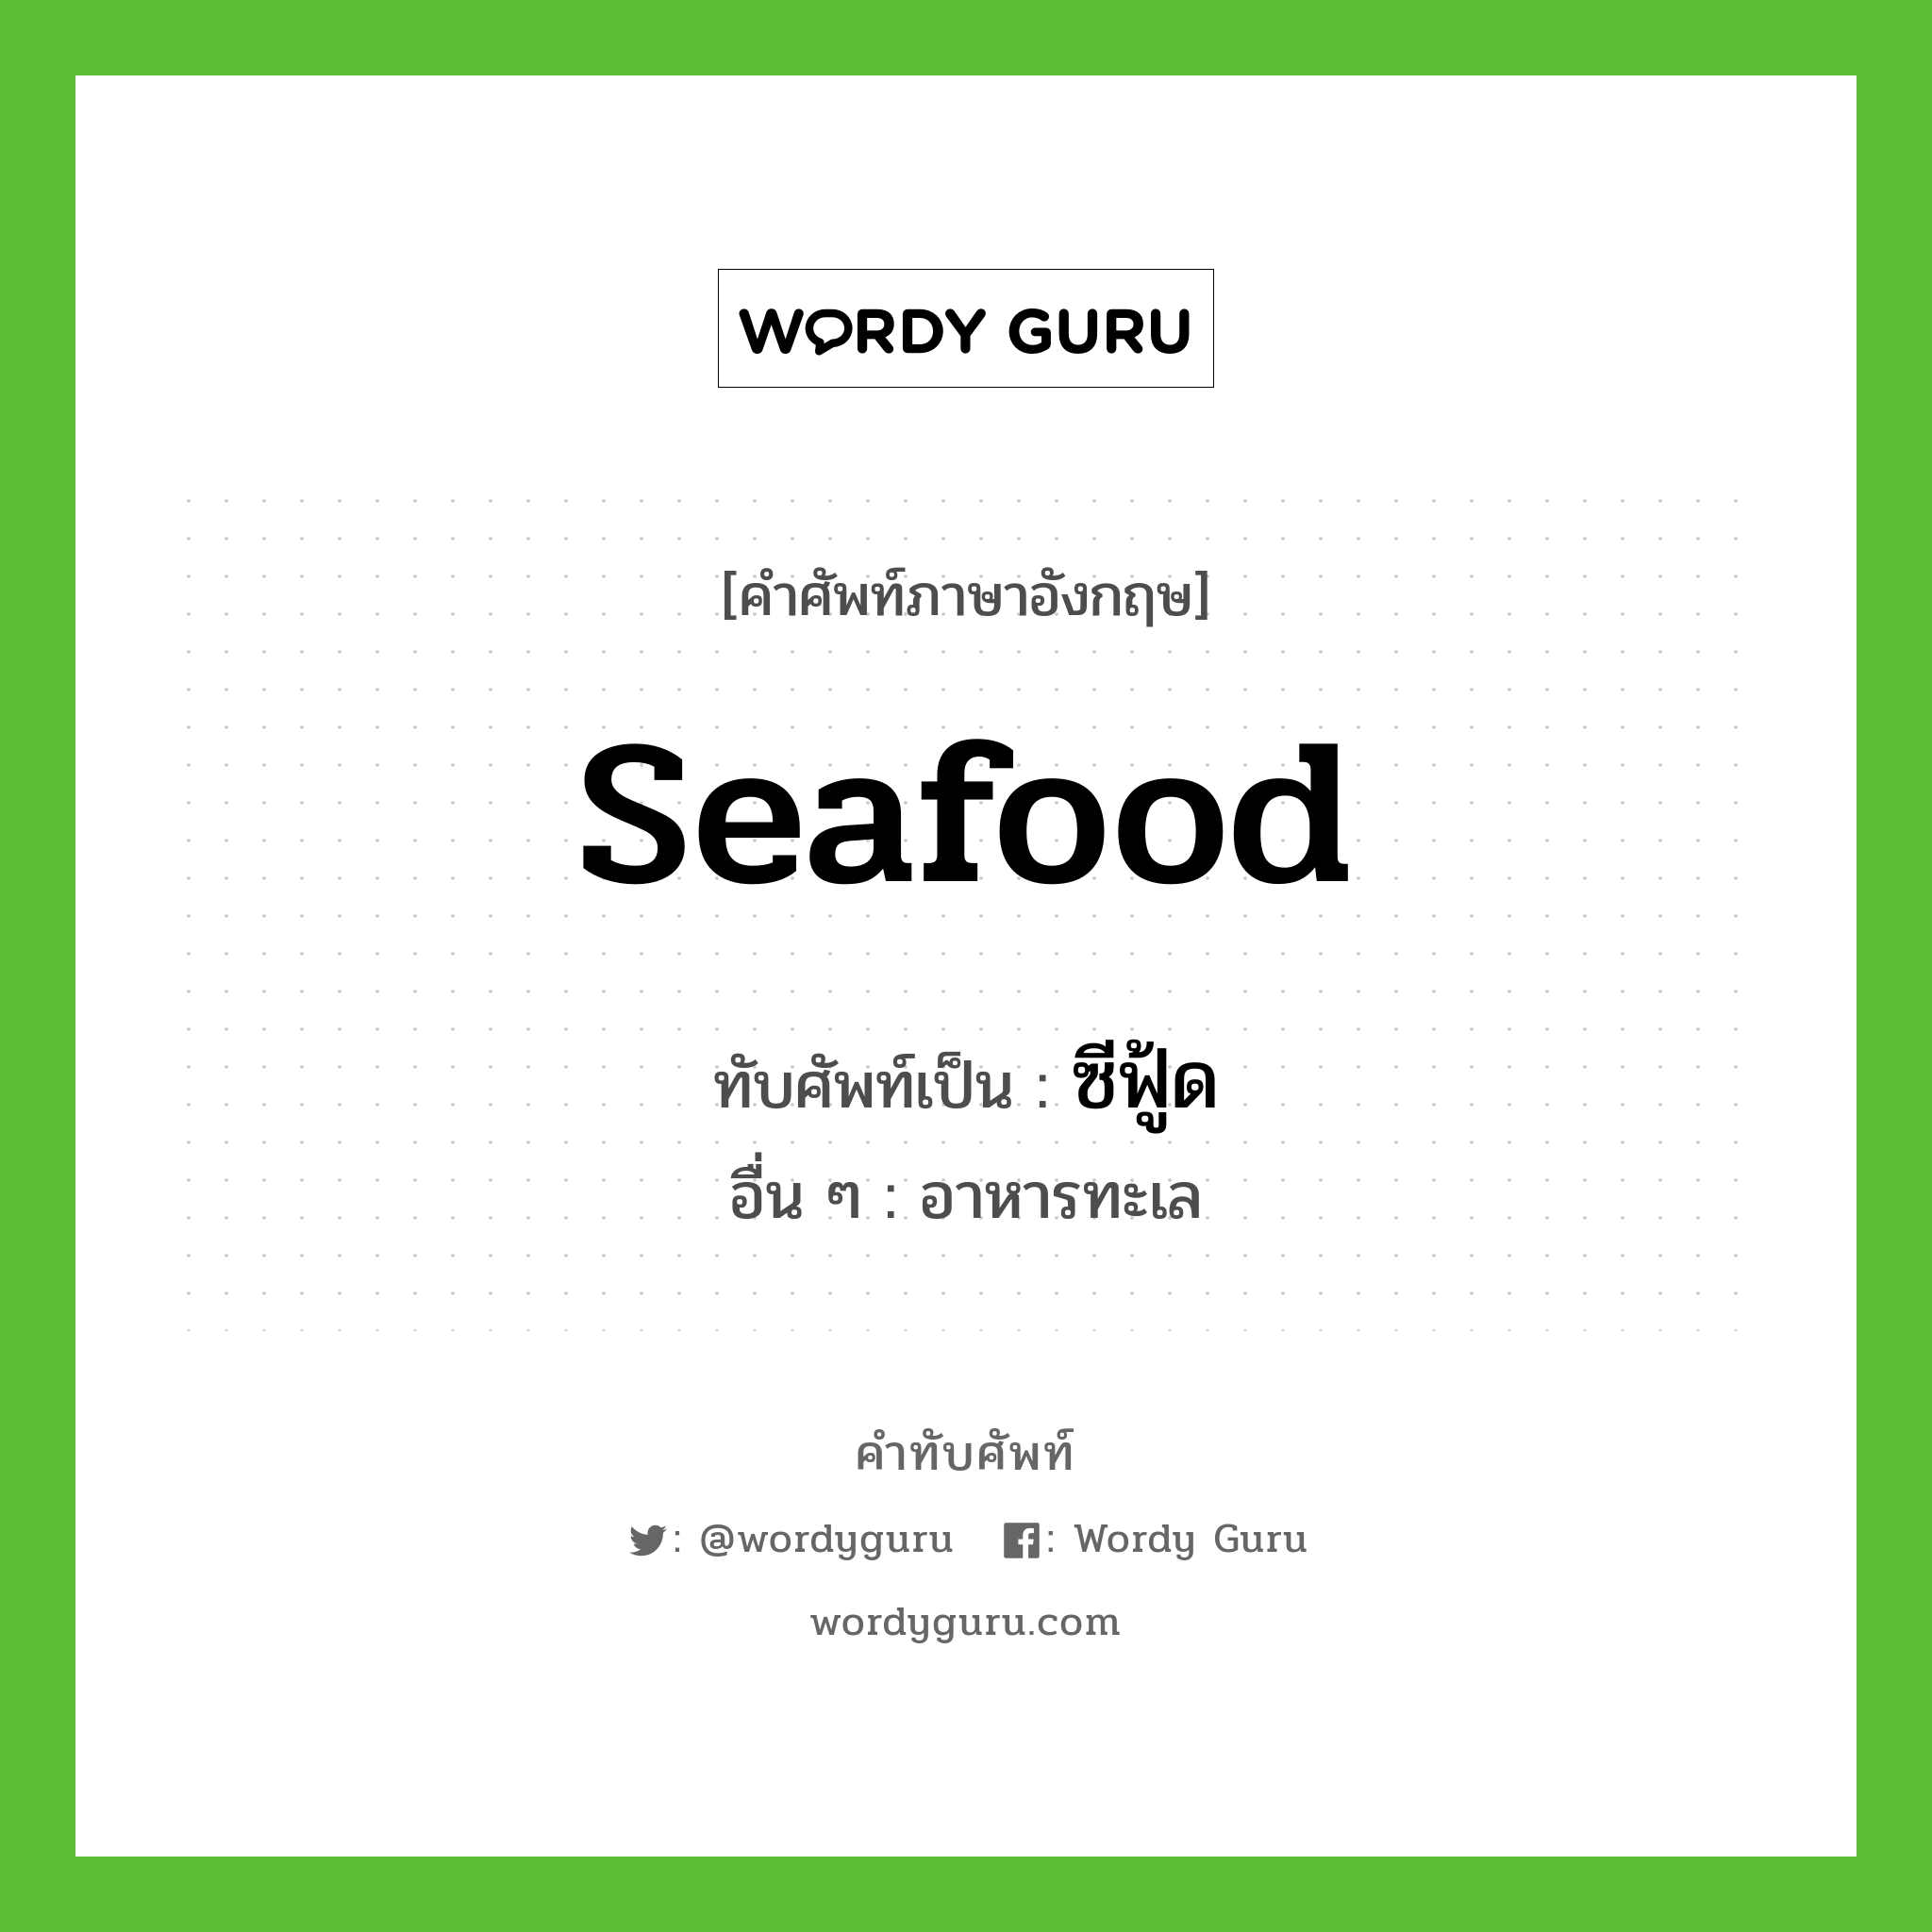 ซีฟู้ด เขียนอย่างไร?, คำศัพท์ภาษาอังกฤษ ซีฟู้ด ทับศัพท์เป็น seafood อื่น ๆ อาหารทะเล